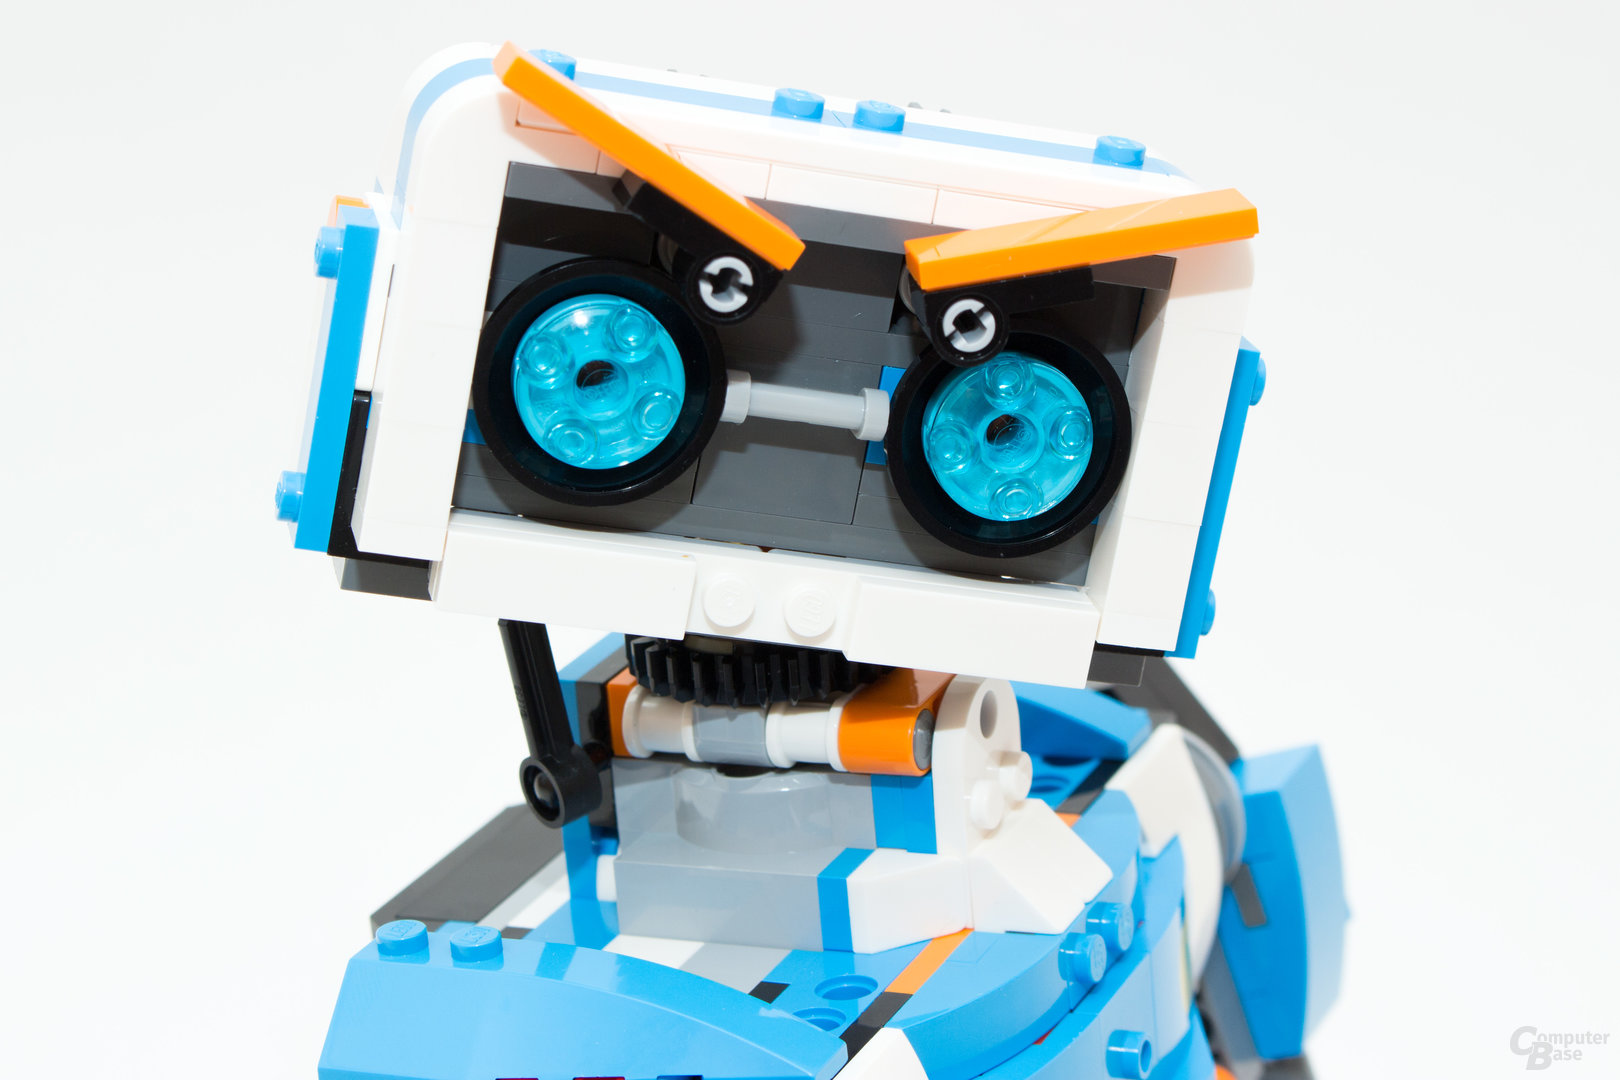 Lego Boost – Vernie, der Roboter